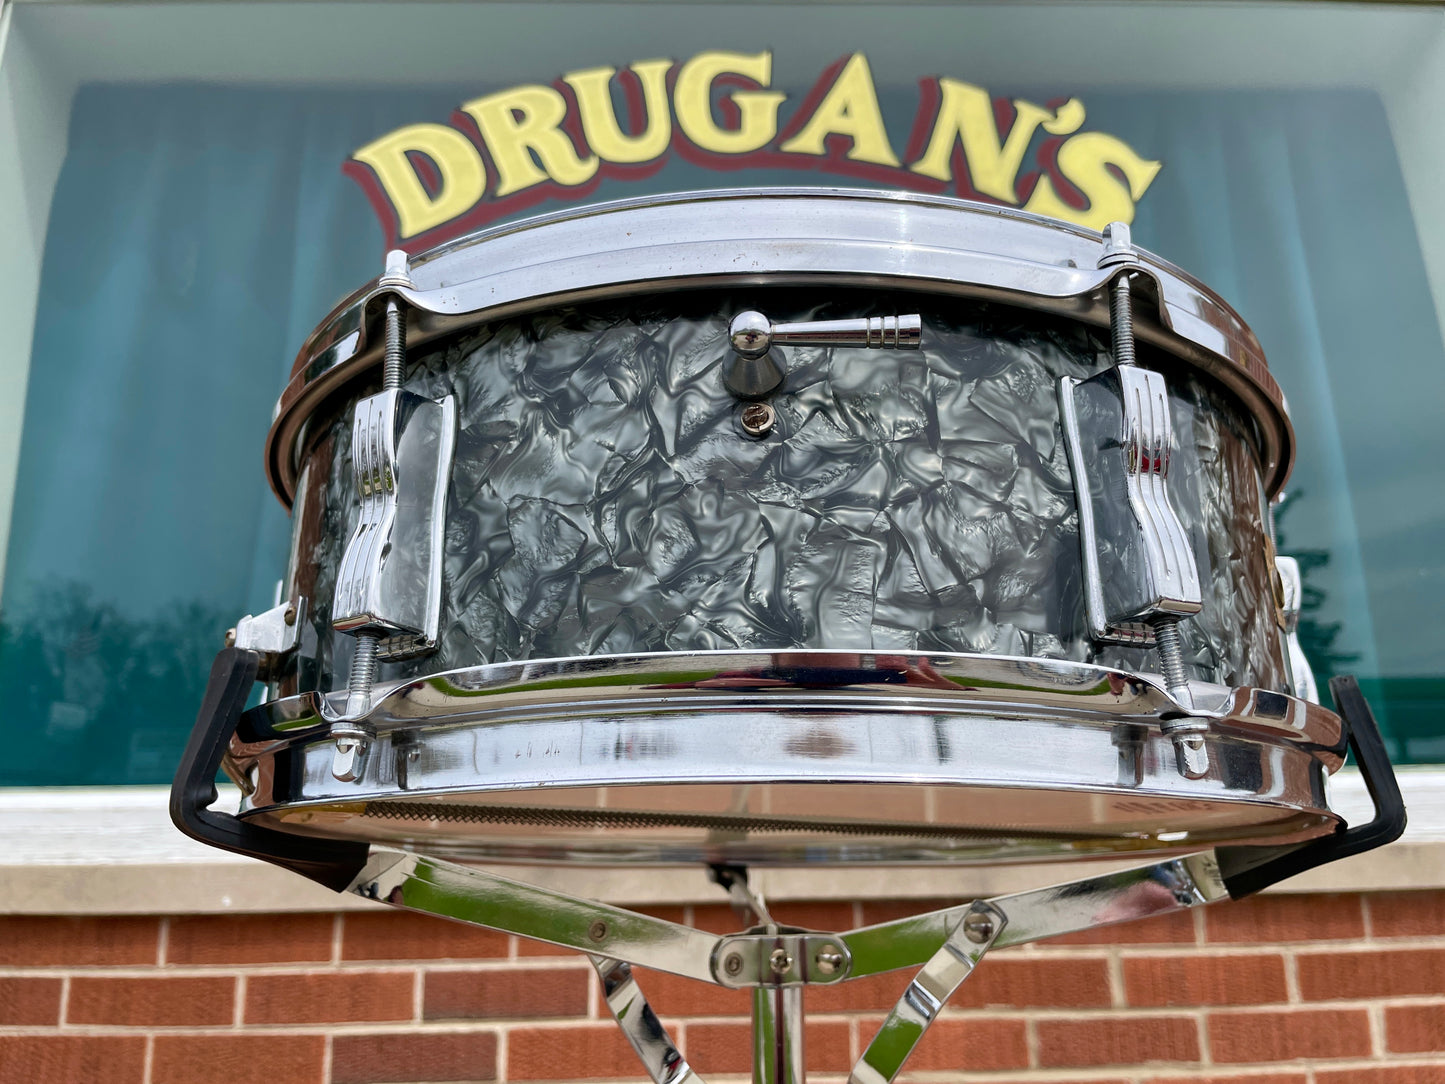 1966 Ludwig 5x14 Pioneer Snare Drum Black Diamond Pearl